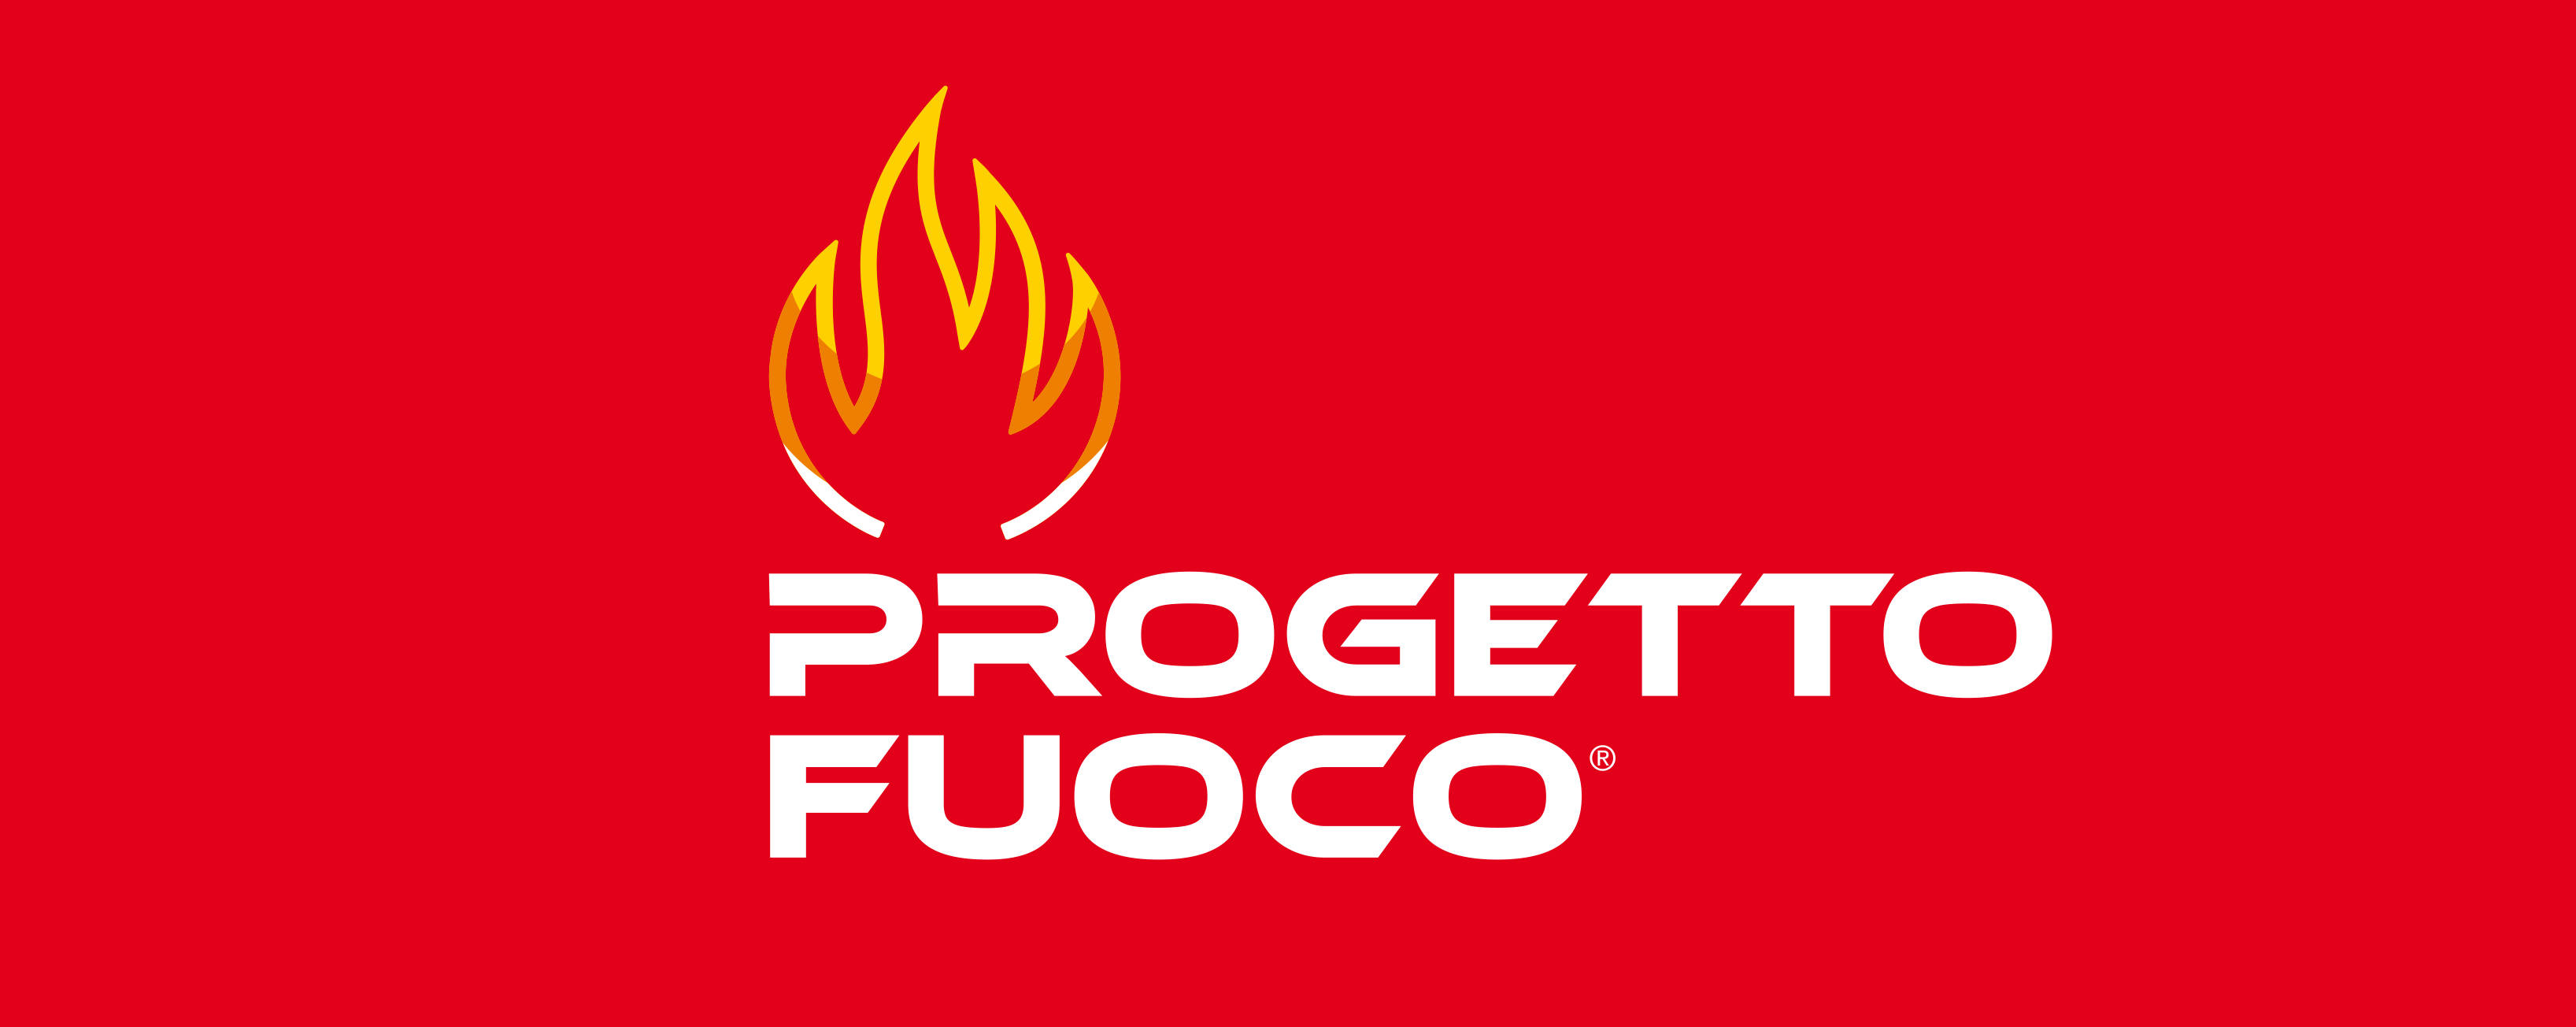 Targi Progetto Fuoco 2018 - Verona (Werona)